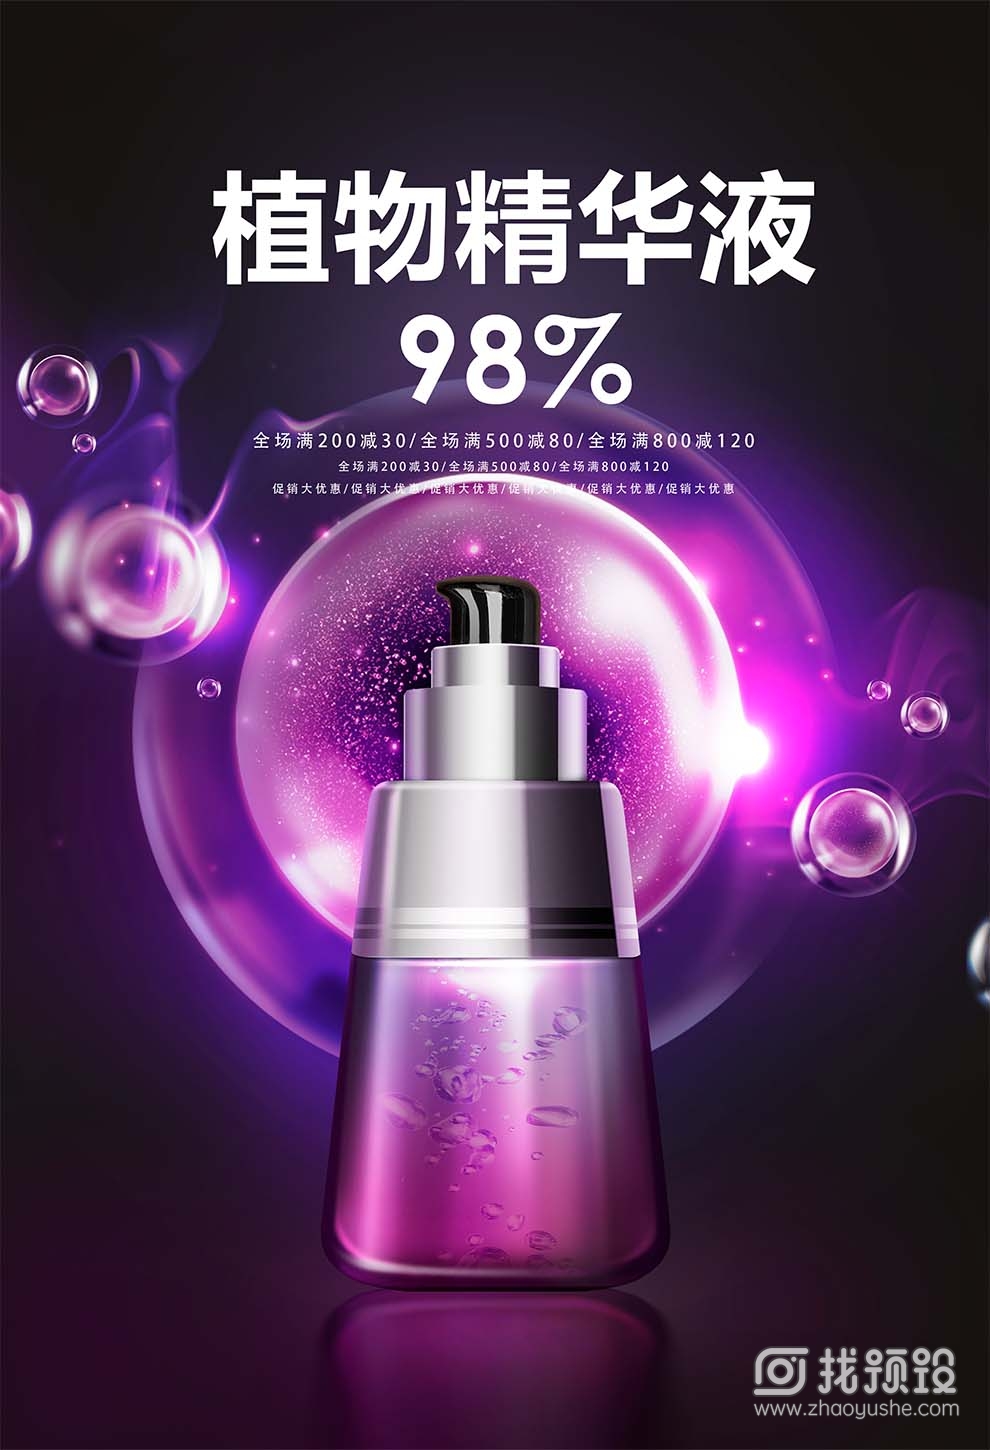 找预设网紫色化妆品海报设计psd2023年3月31日 2023011020263726